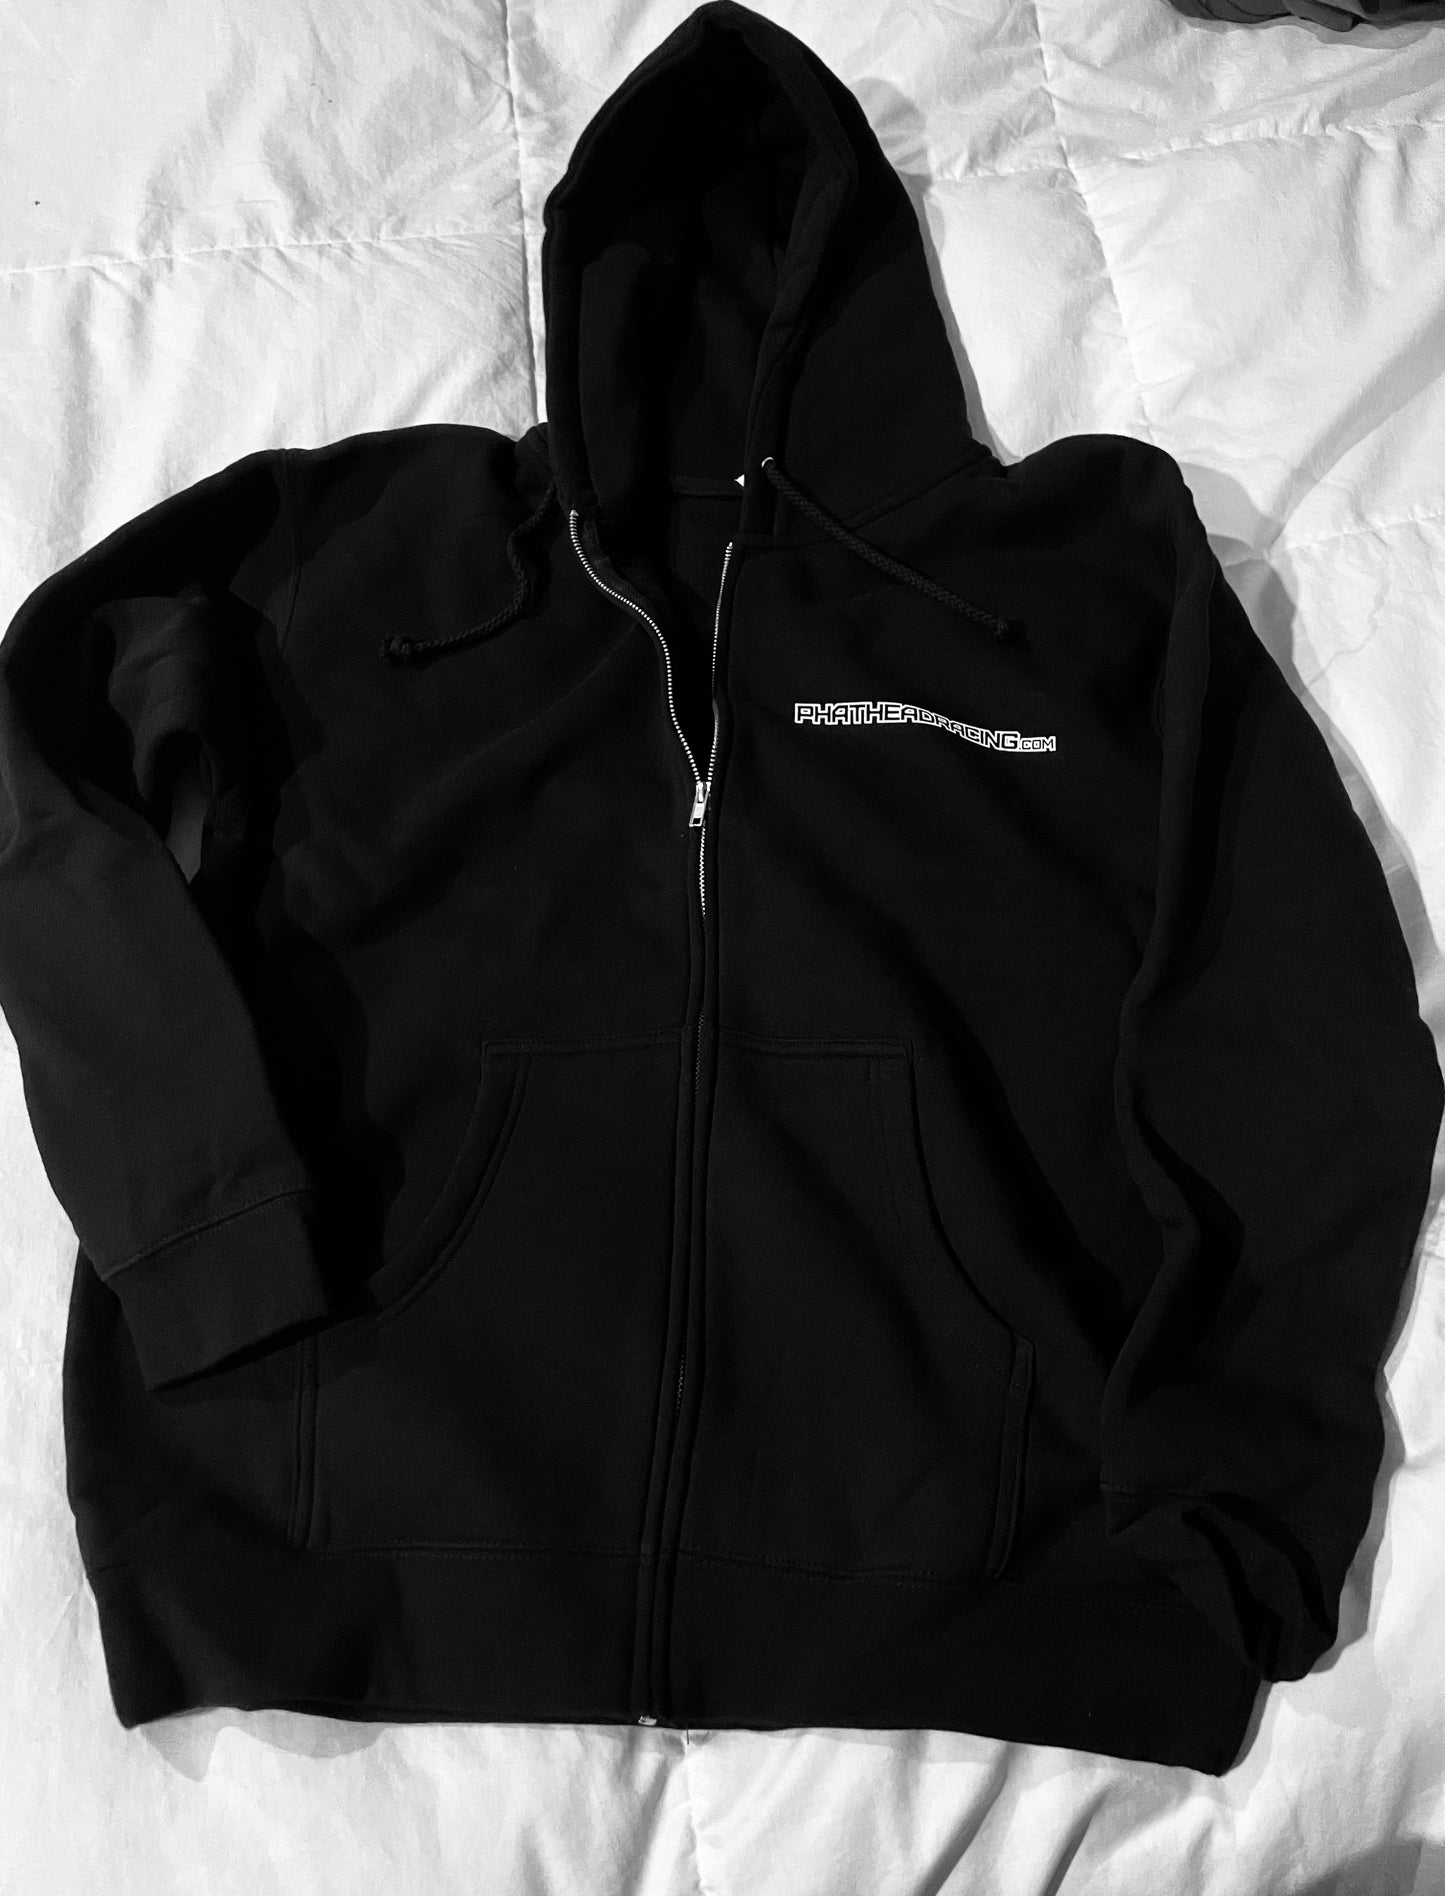 Phathead Racing Hoodie - Full Zip logo Jacket  - Black